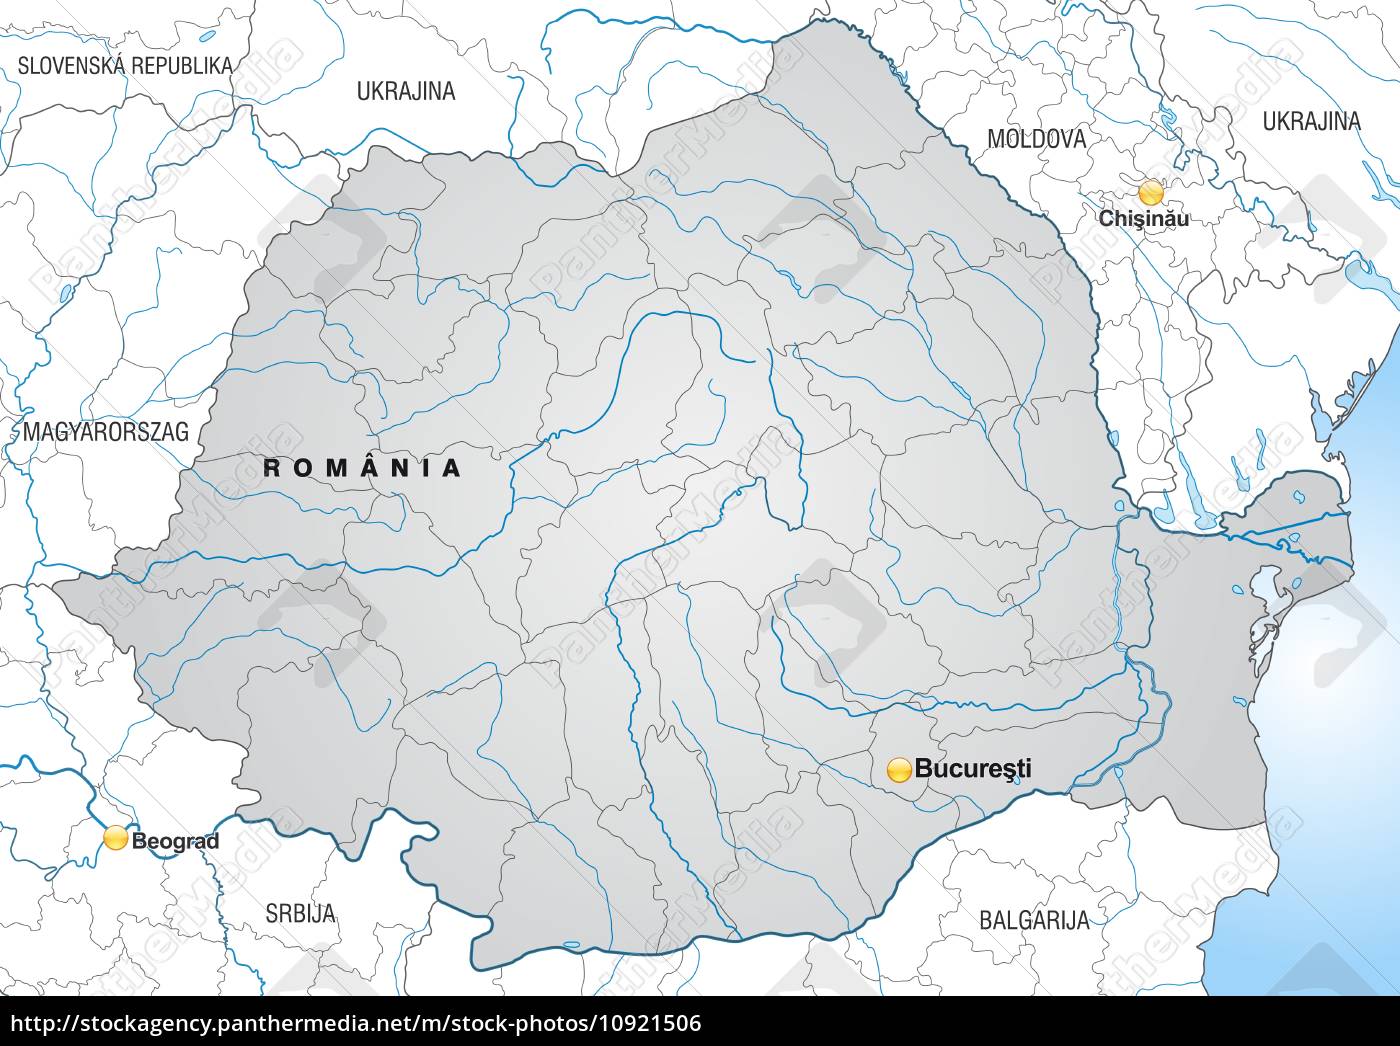 Kort Over RumæNien kort over rumænien med kanter i grå   Stockphoto   #10921506  Kort Over RumæNien